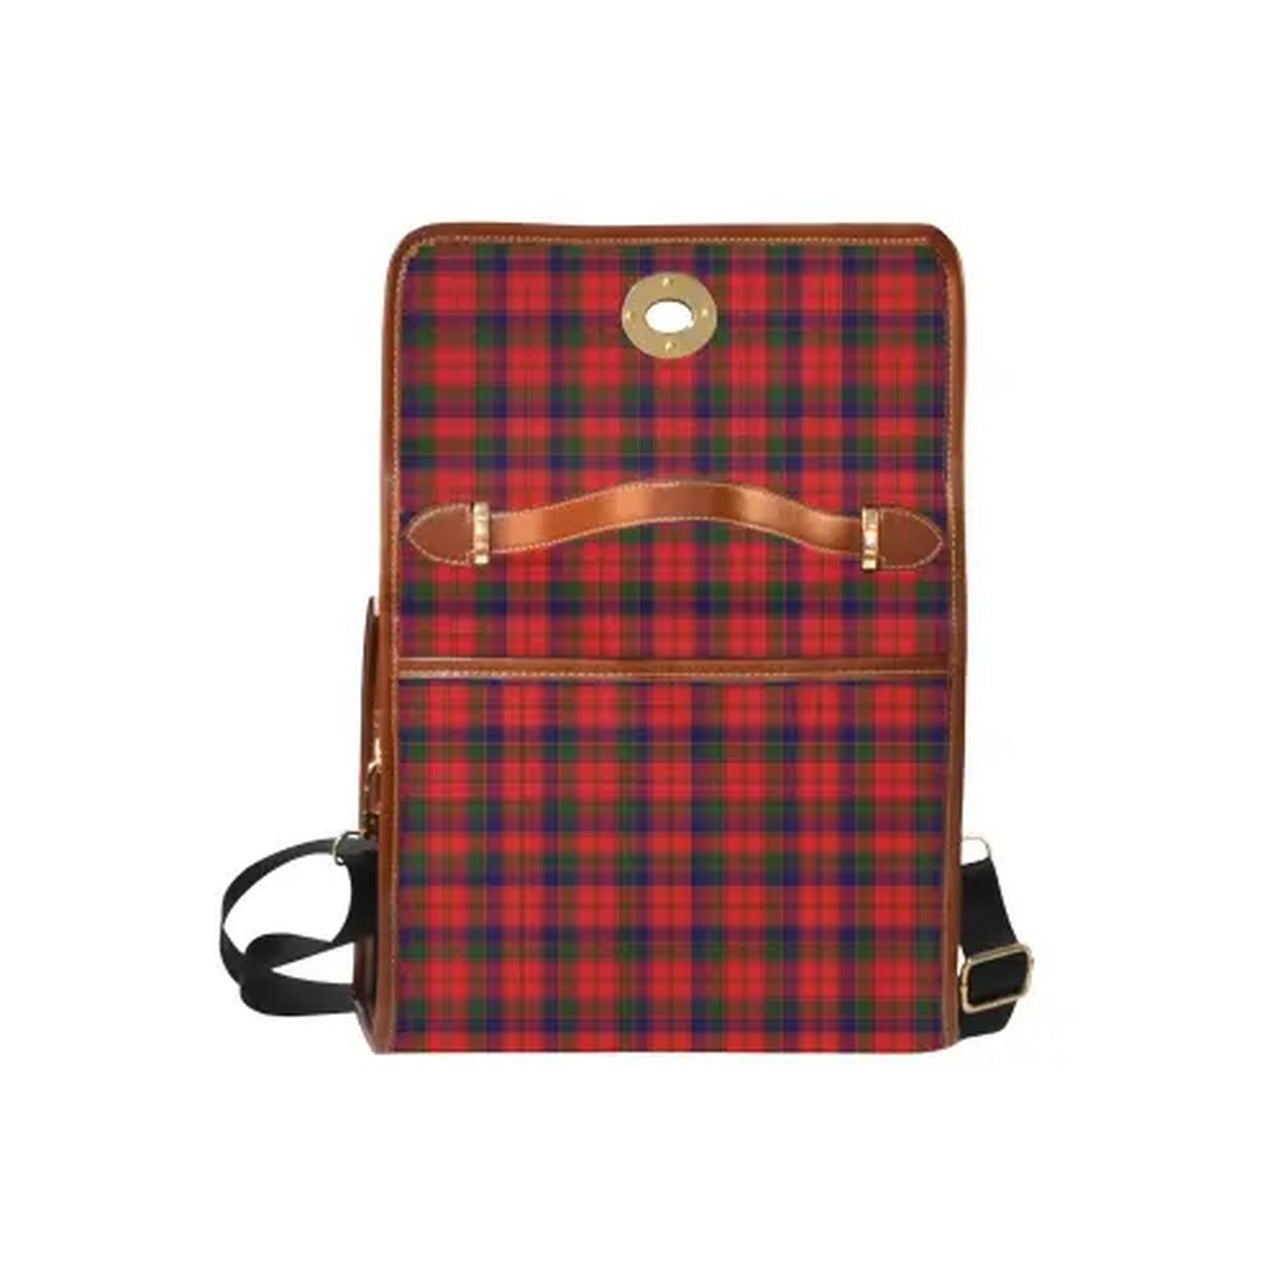 Robertson (Clan Donnachaidh) Tartan Canvas Bag